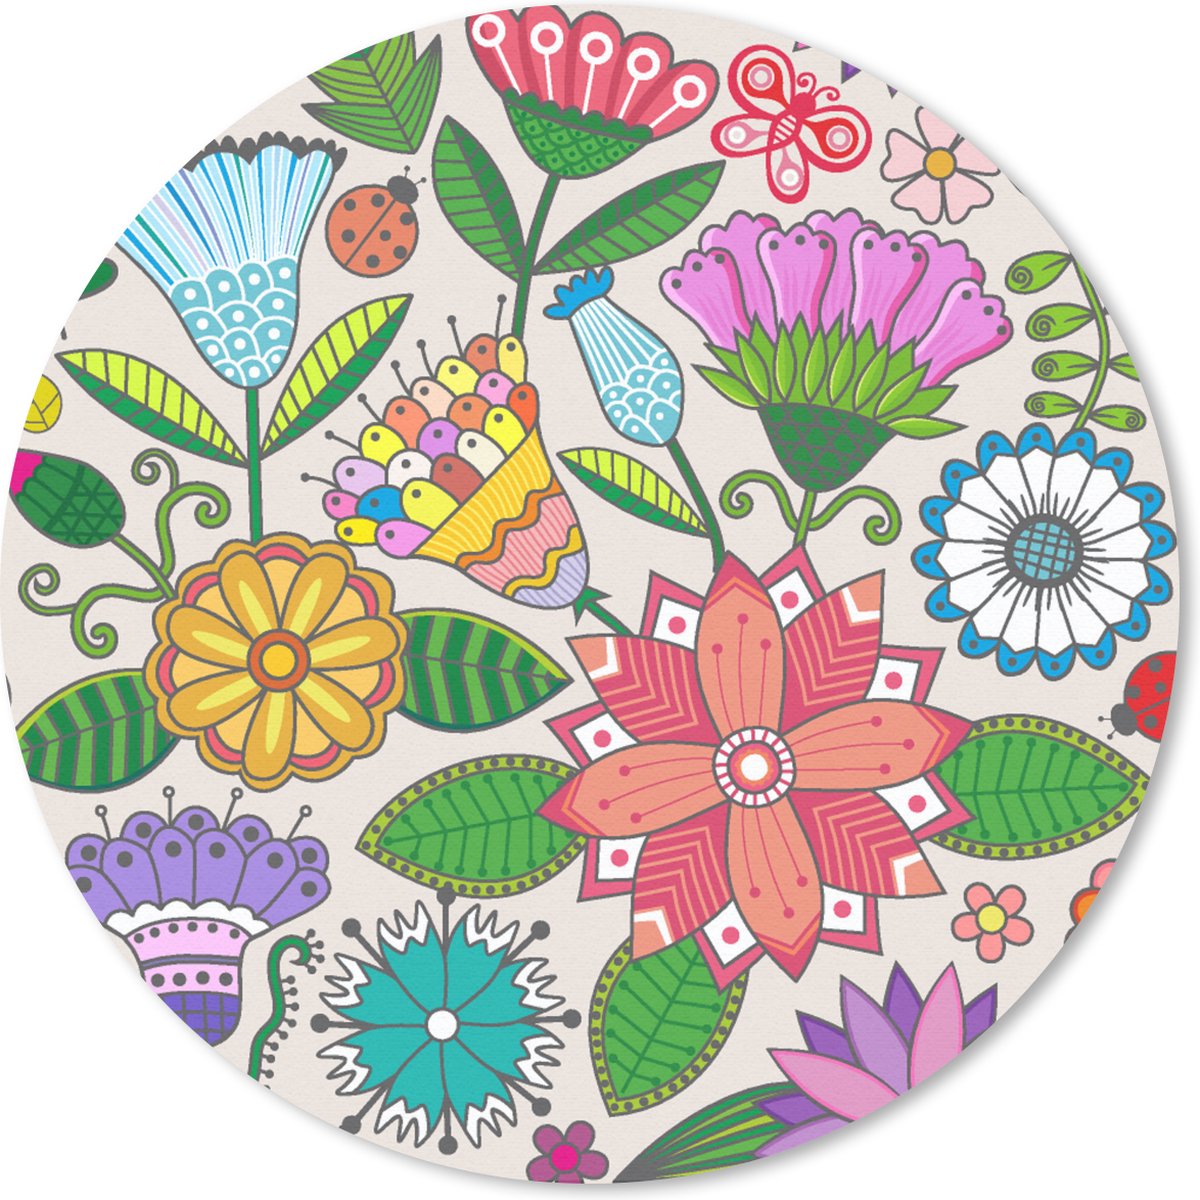 Muismat - Mousepad - Rond - Bloemen - Regenboog - Vlinder - Design - 30x30 cm - Ronde muismat